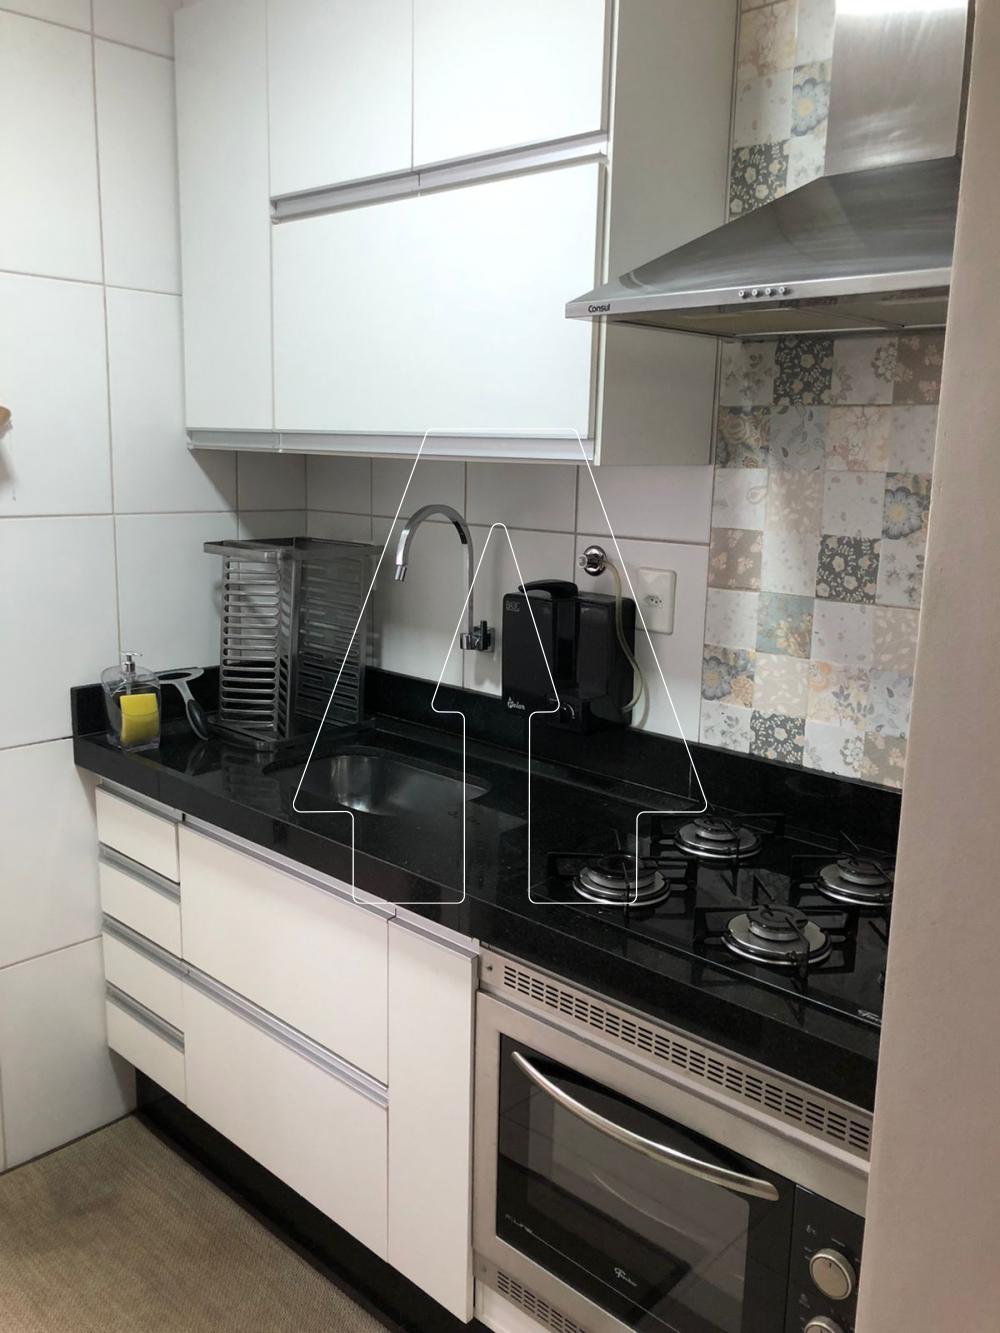 Comprar Apartamento / Padrão em Araçatuba R$ 250.000,00 - Foto 12